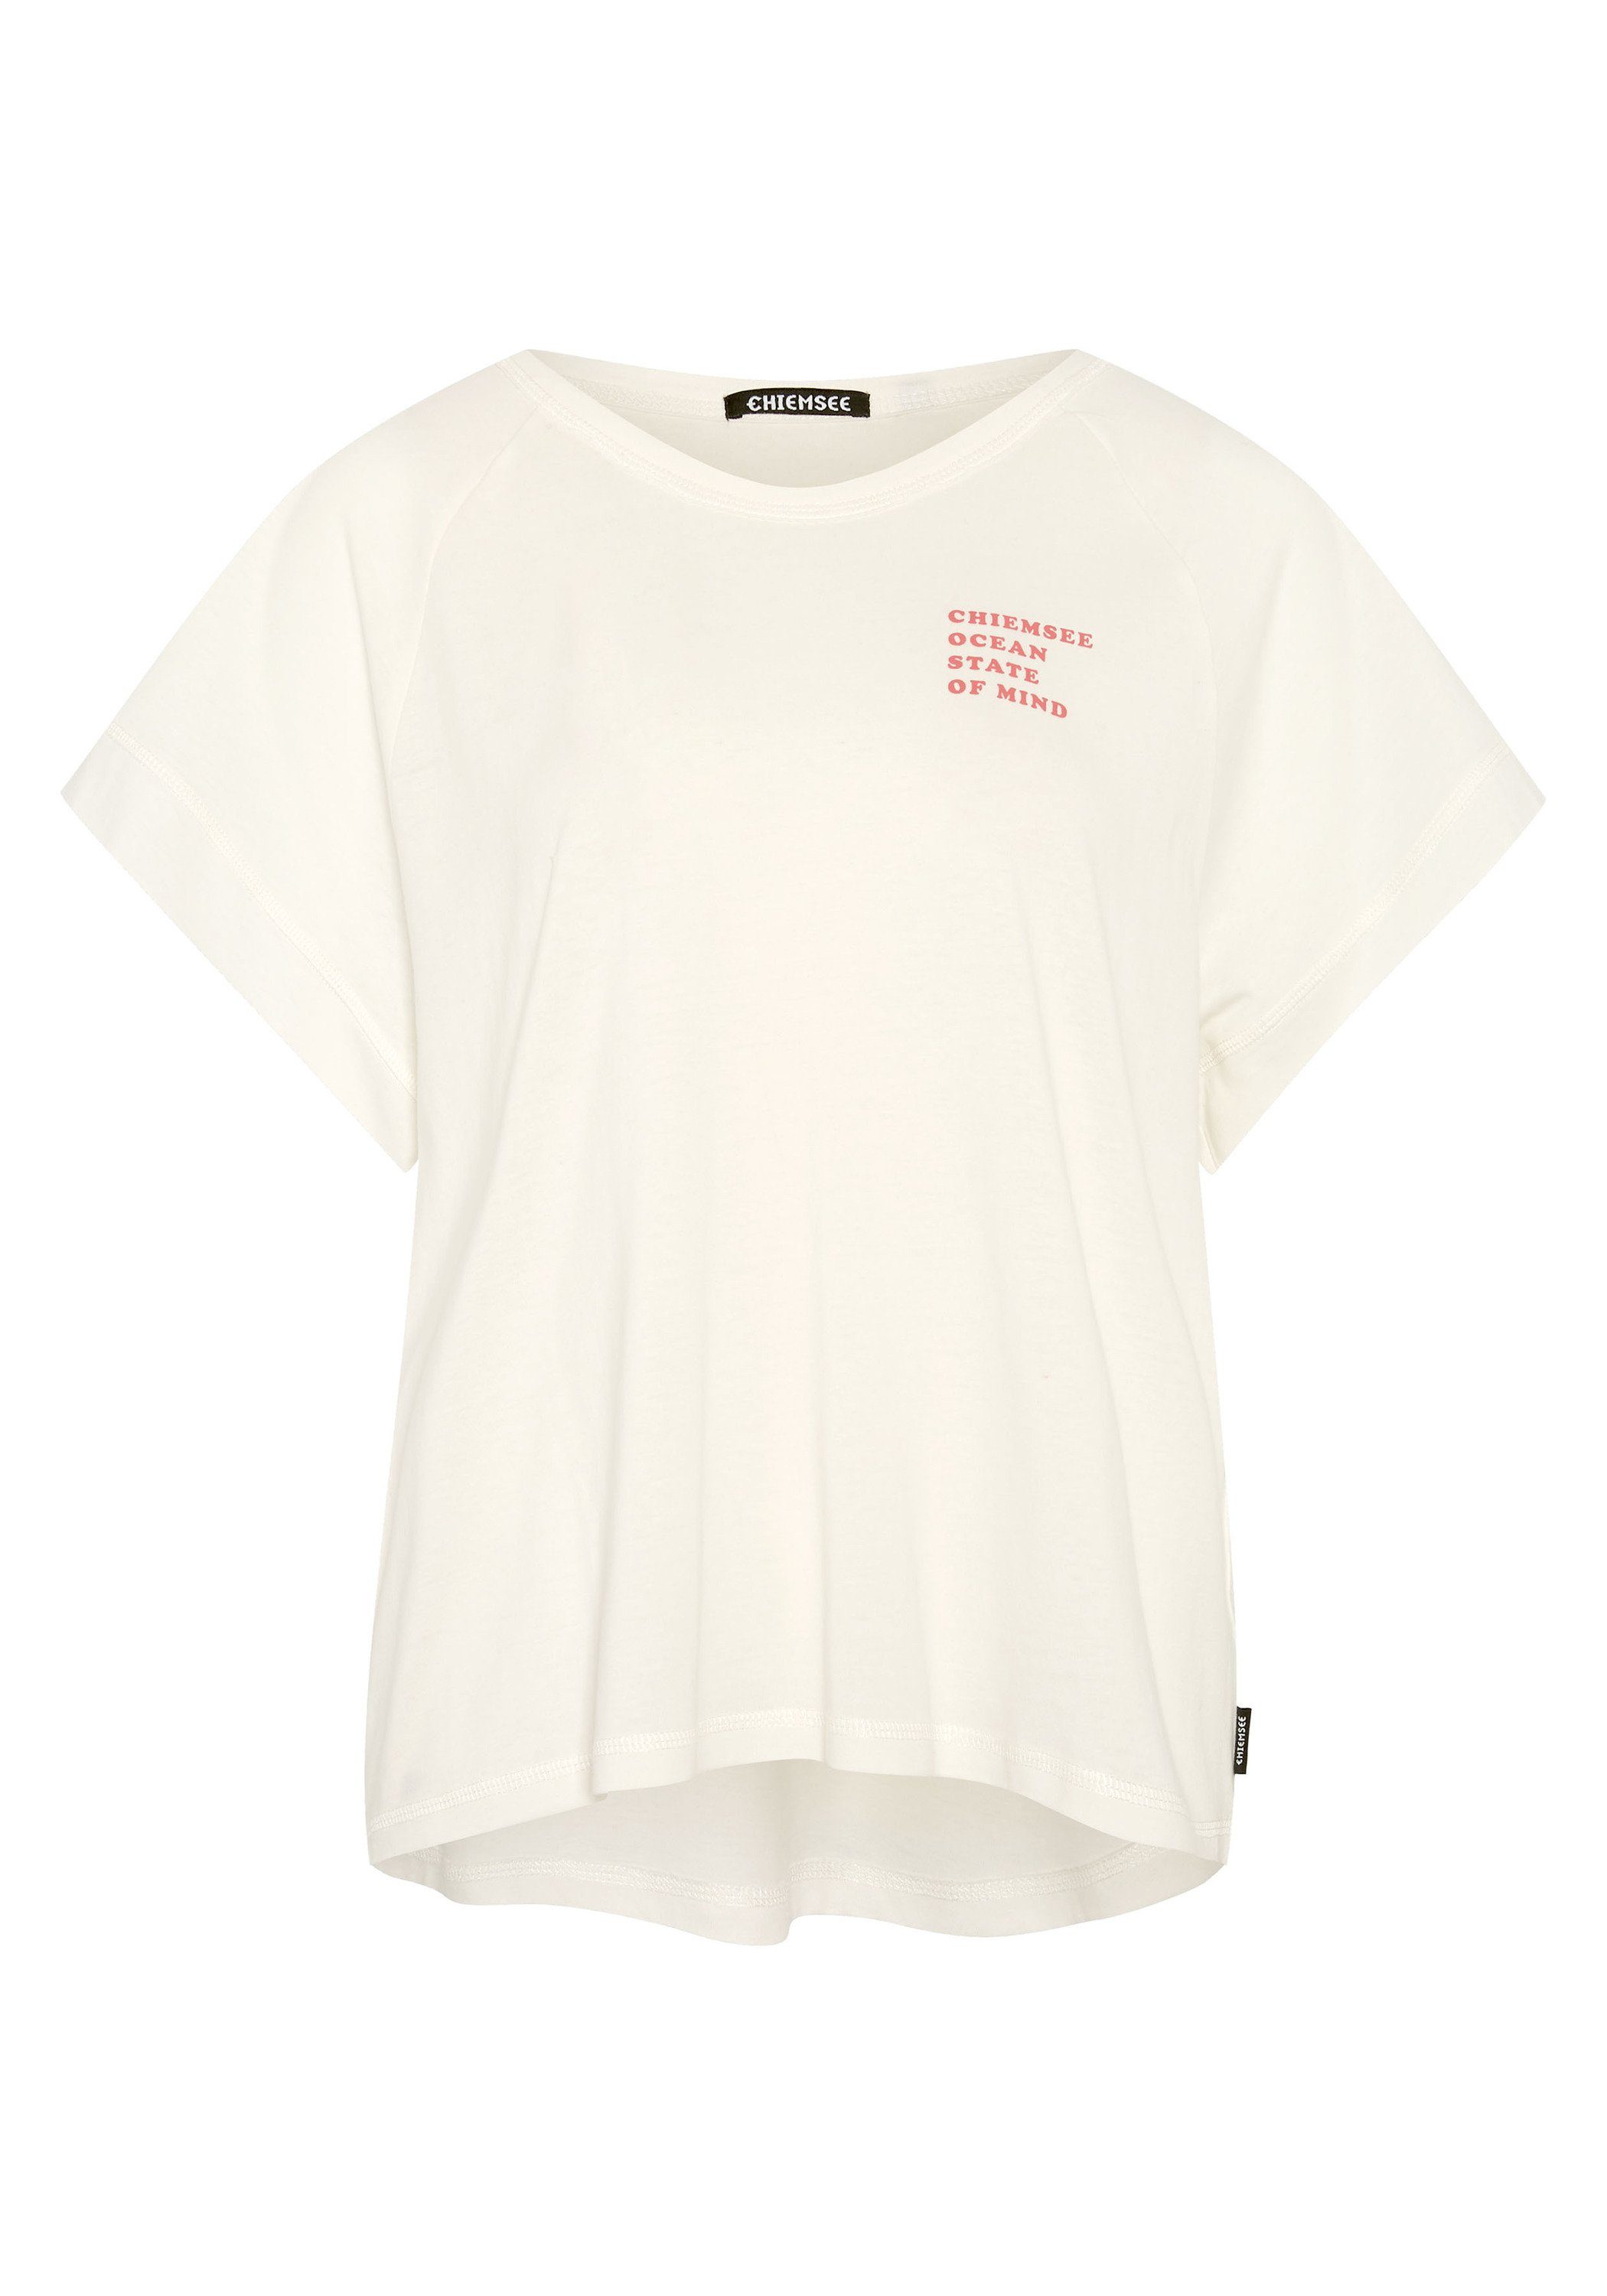 Shirt 11-4202 Star Chiemsee Vintage-Optik White in Print-Shirt 1